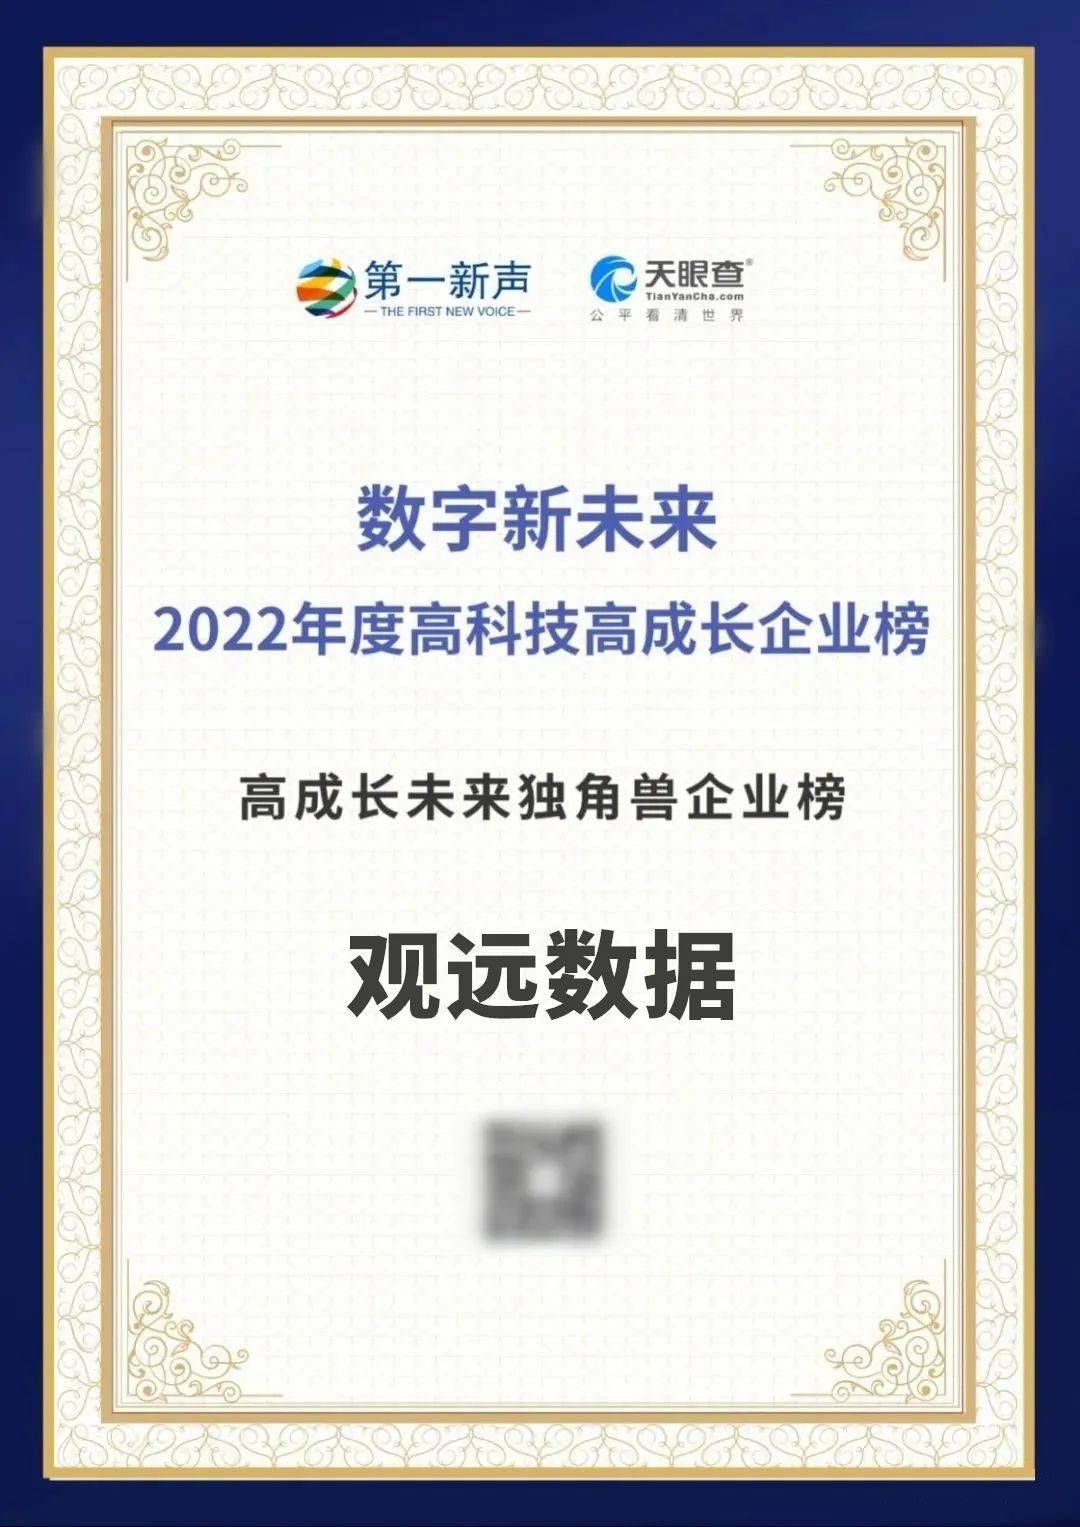 观远数据喜获双料荣誉，荣登2022年度中国“高成长未来独角兽企业榜”